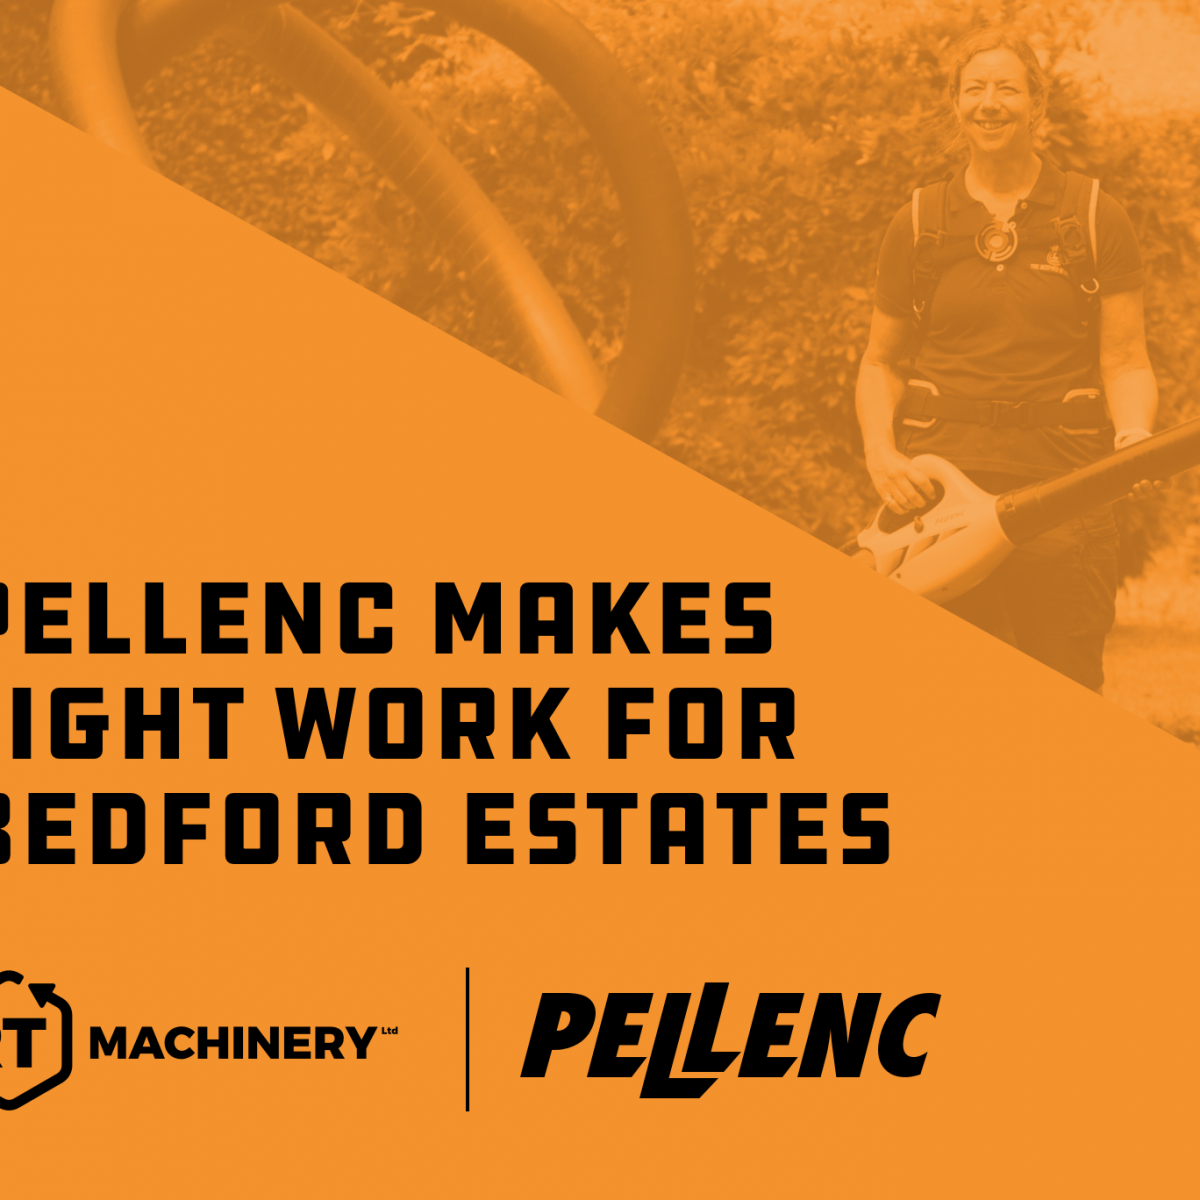 Pellenc Makes Light Work for Bedford Estates